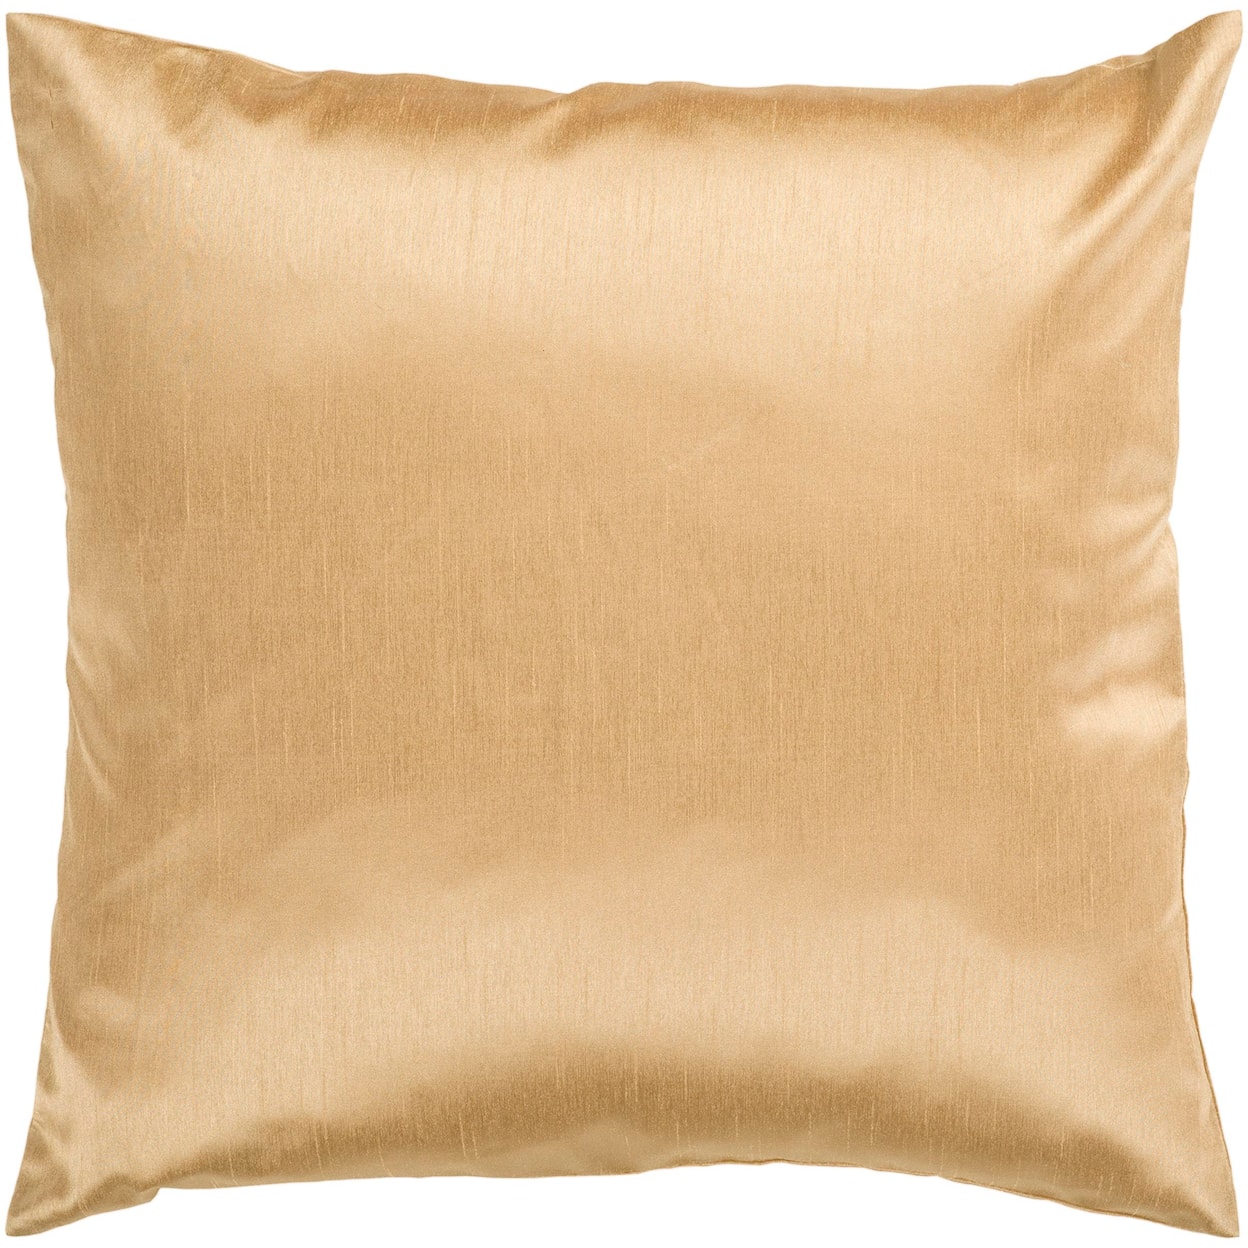 Surya Pillows 22" x 22" Pillow